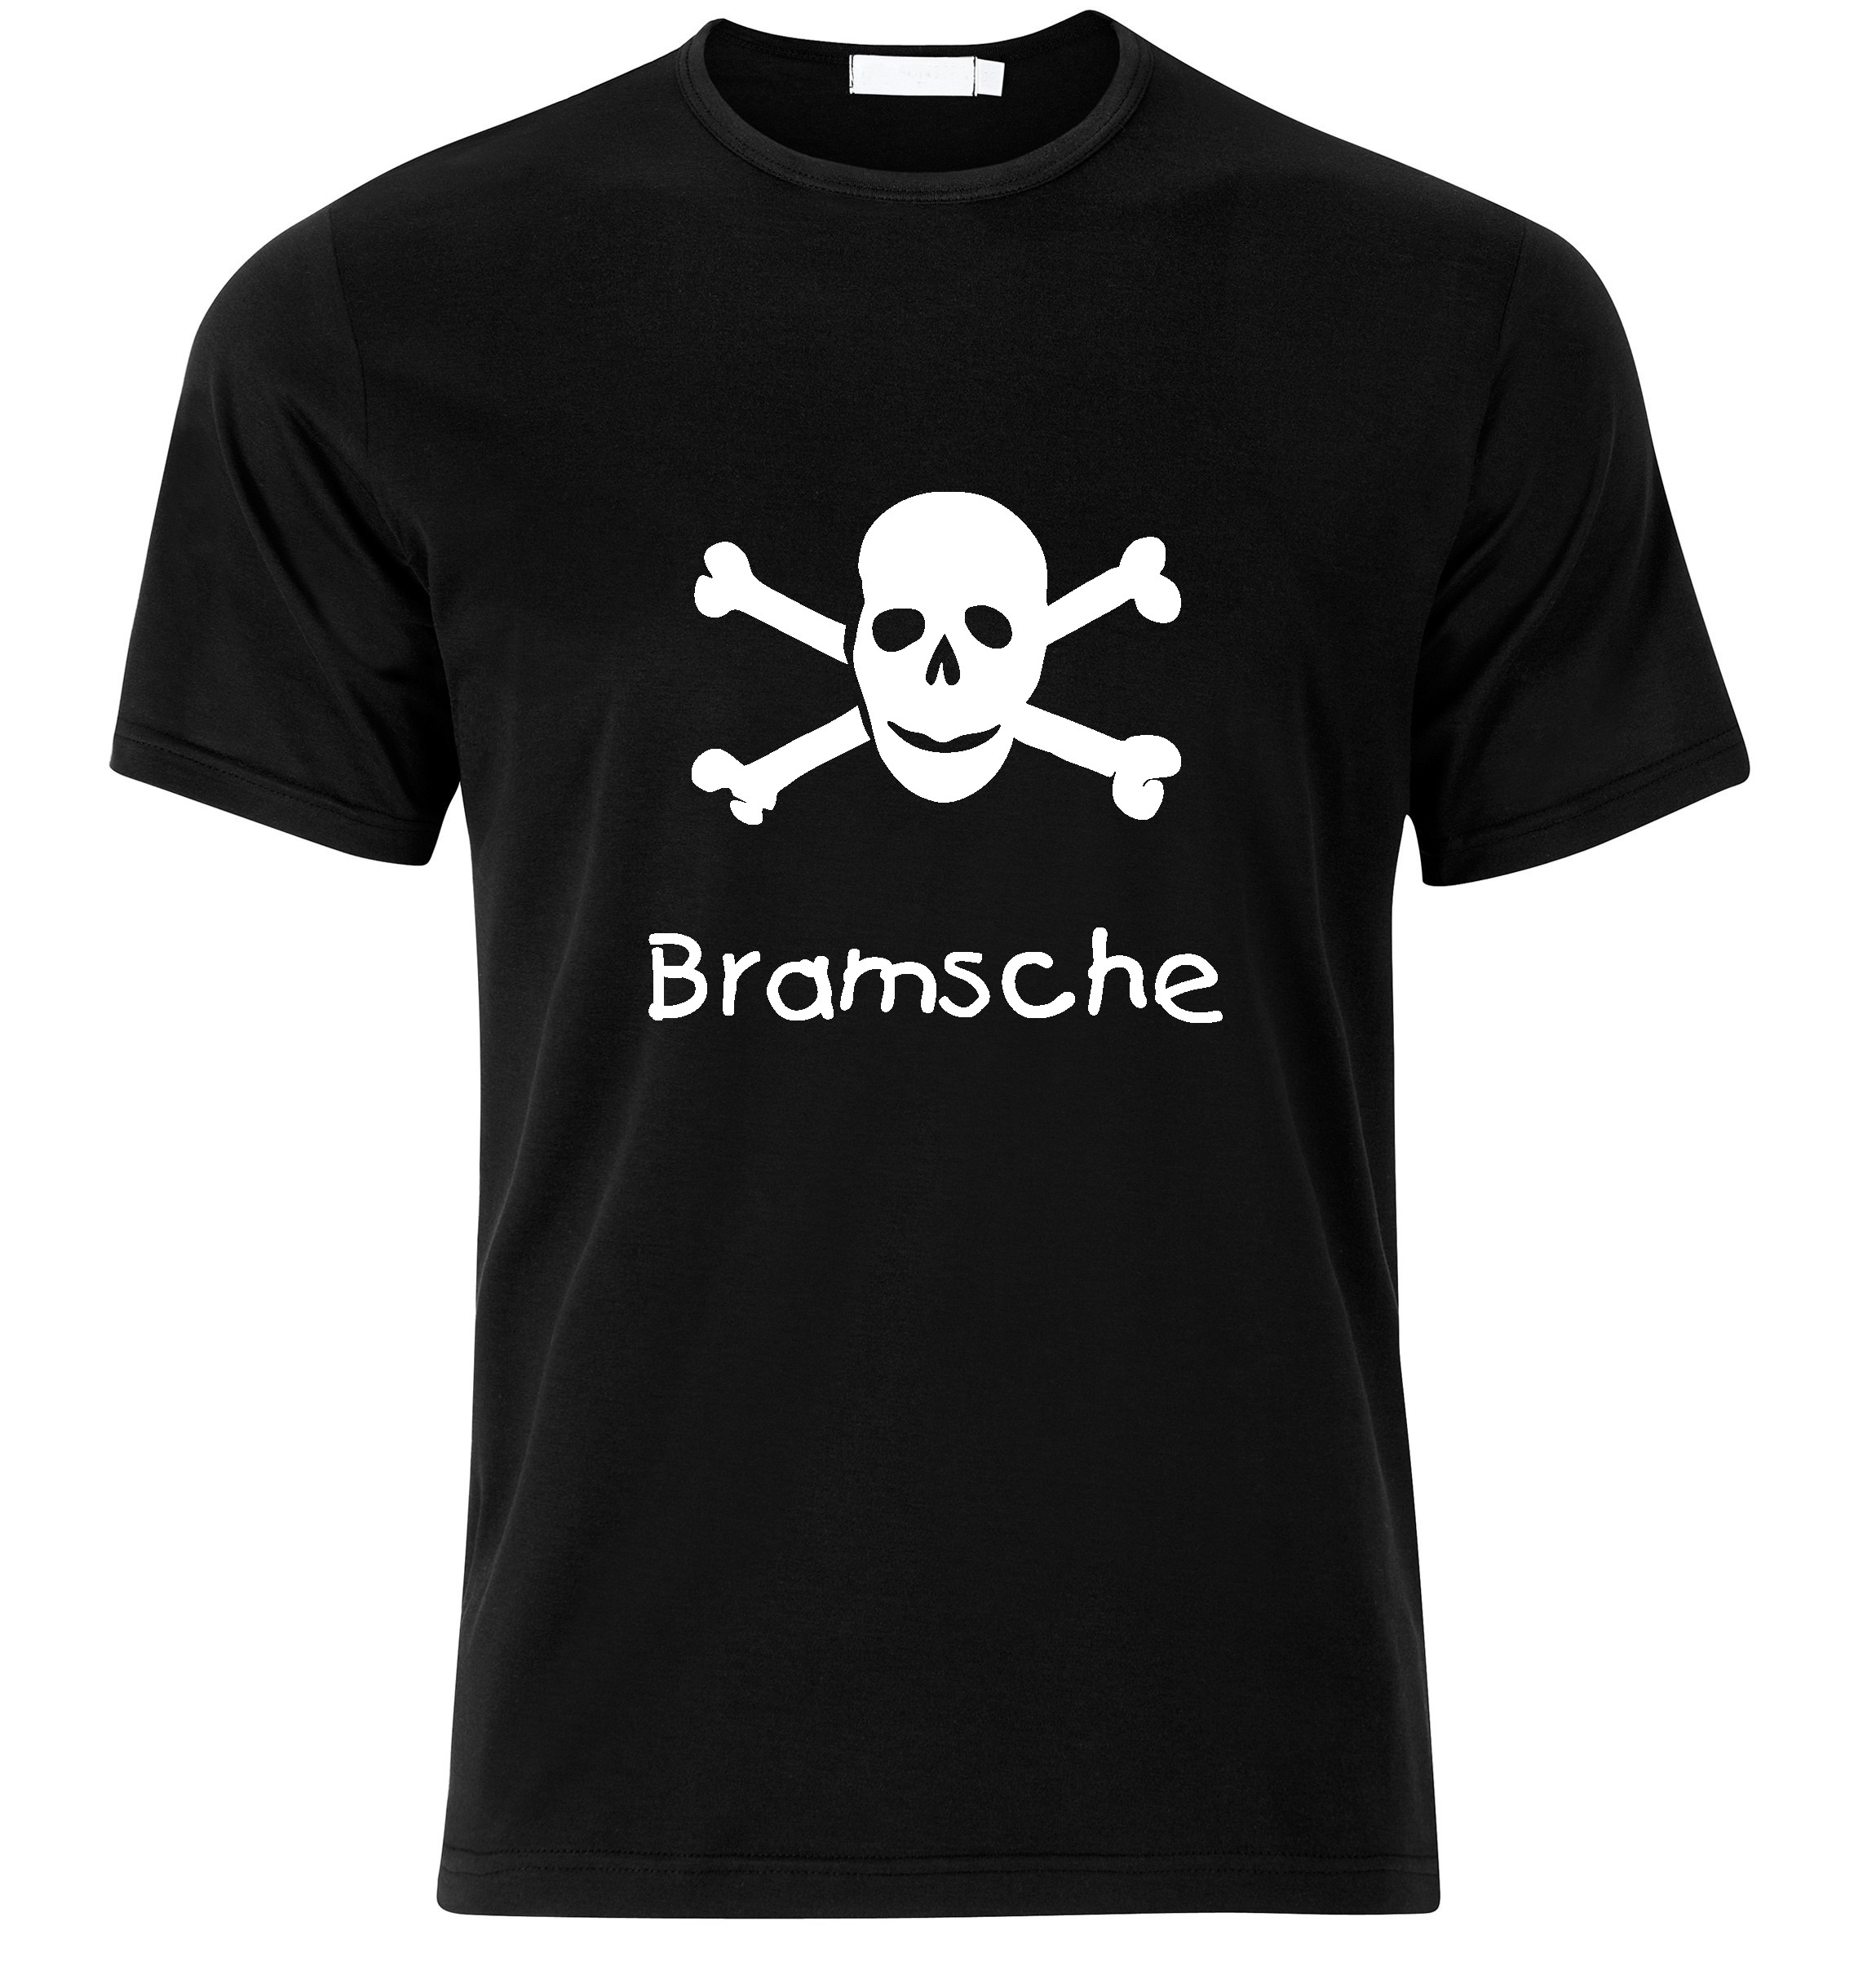 T-Shirt Bramsche Jolly Roger, Totenkopf